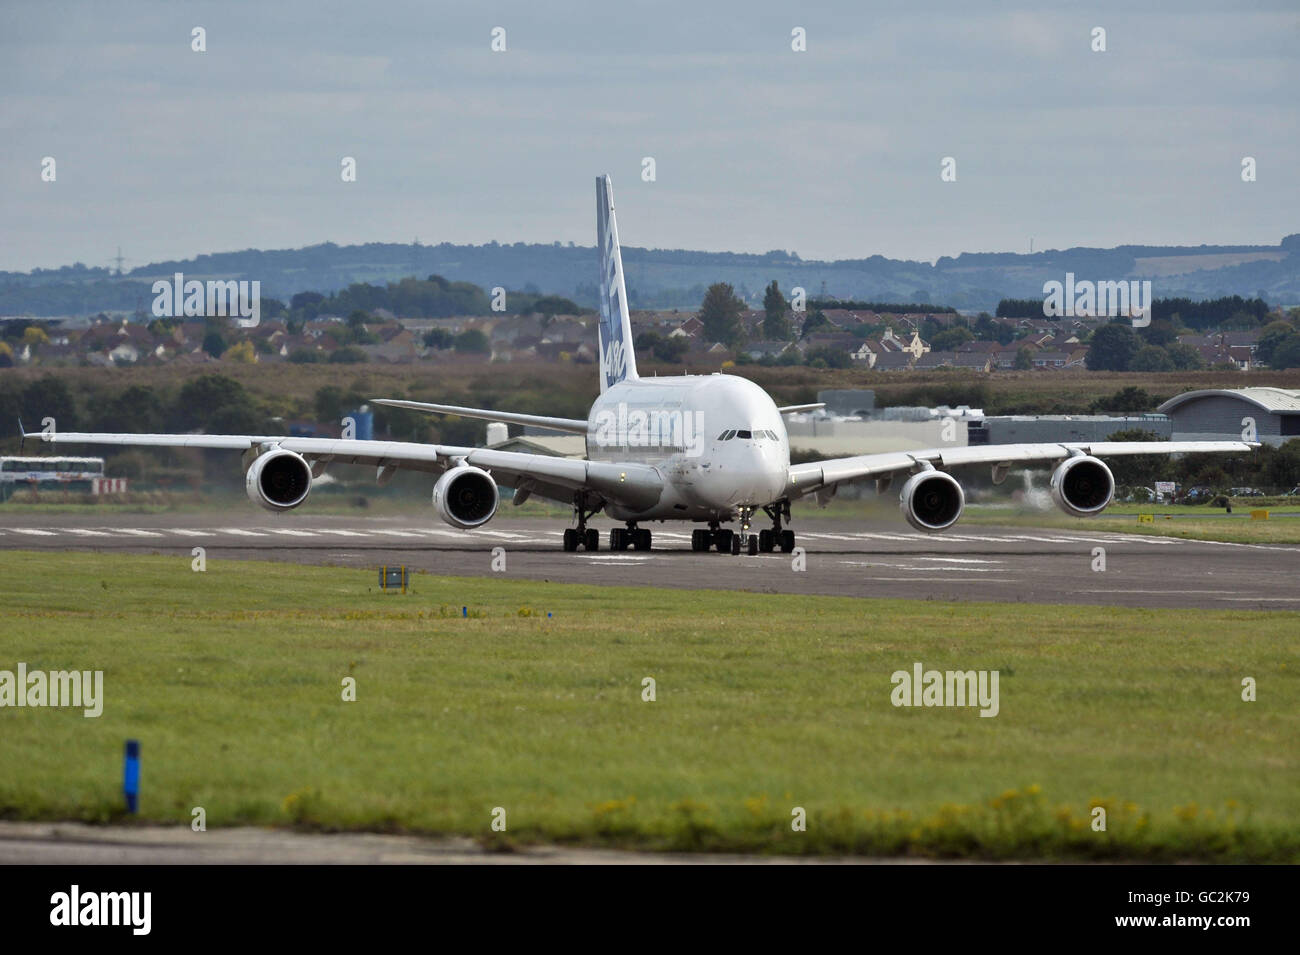 L'avion d'essai MSN1, un Airbus A380 Superjumbo, quitte l'aéroport de Filton, Bristol et part pour Tolose, en France, après une tournée en Europe et au Royaume-Uni où l'on estime qu'un million de personnes se sont tournées pour voir l'avion. Banque D'Images